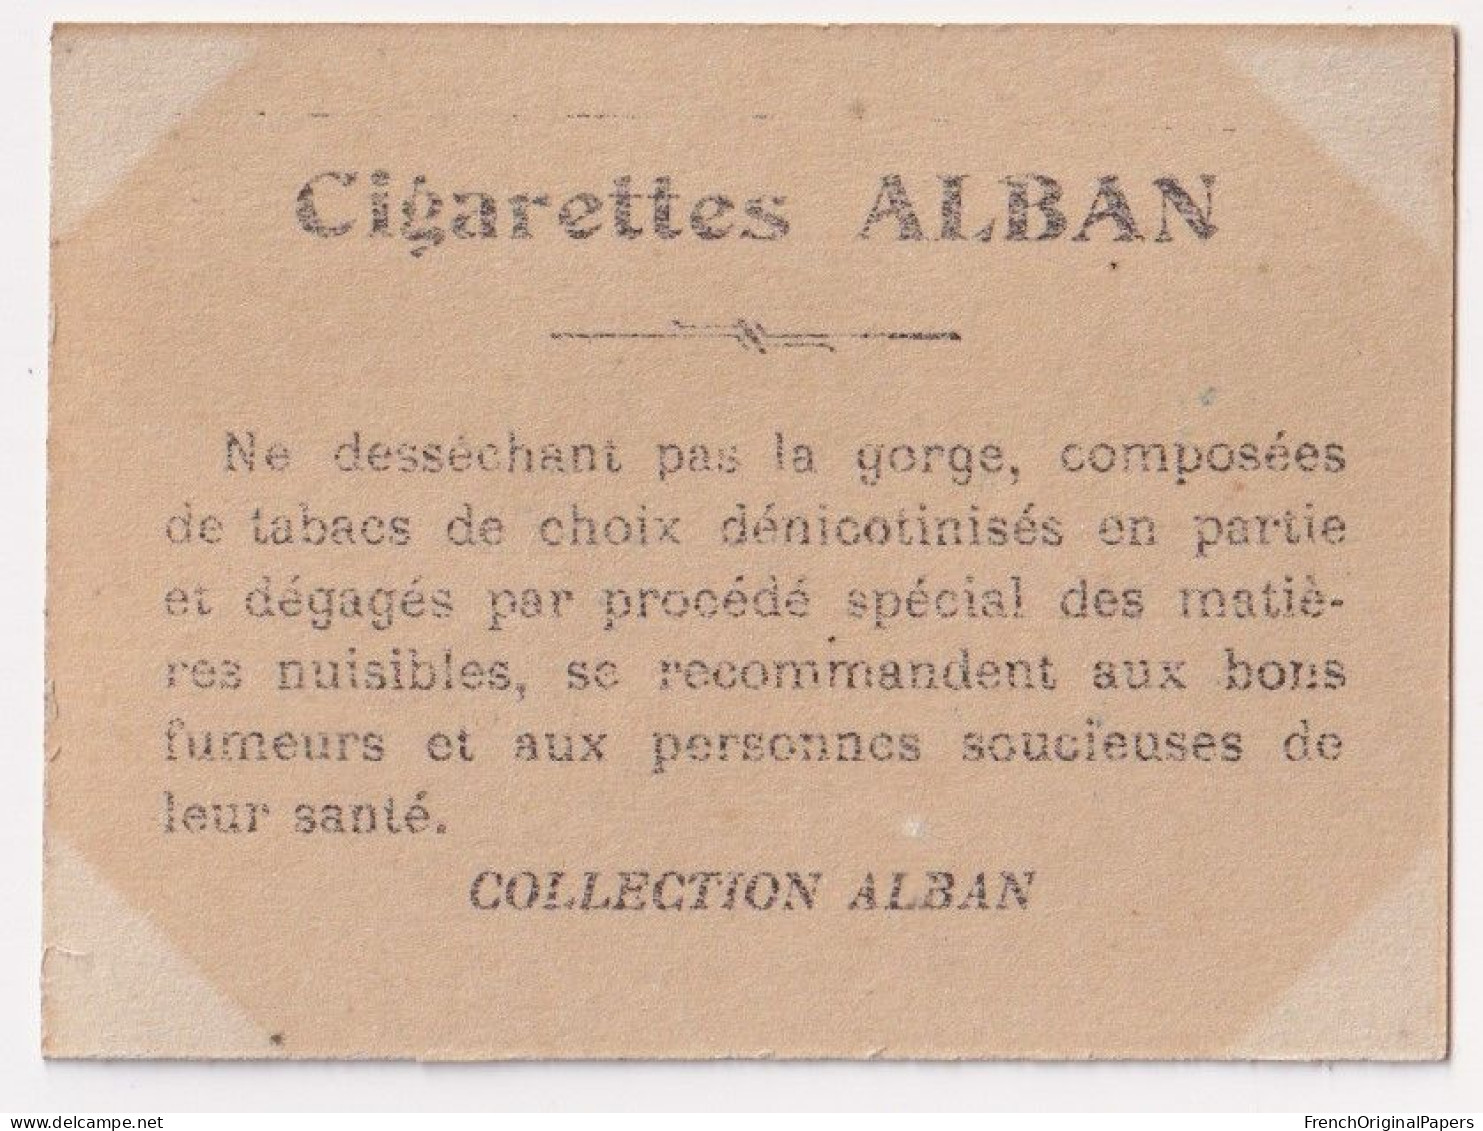 Tolédo - Cigarettes L. Alban 1910 Photo Femme Sexy Pin-up Vintage Artiste Cabaret Paris Bône Danse Danseuse A62-18 - Autres Marques